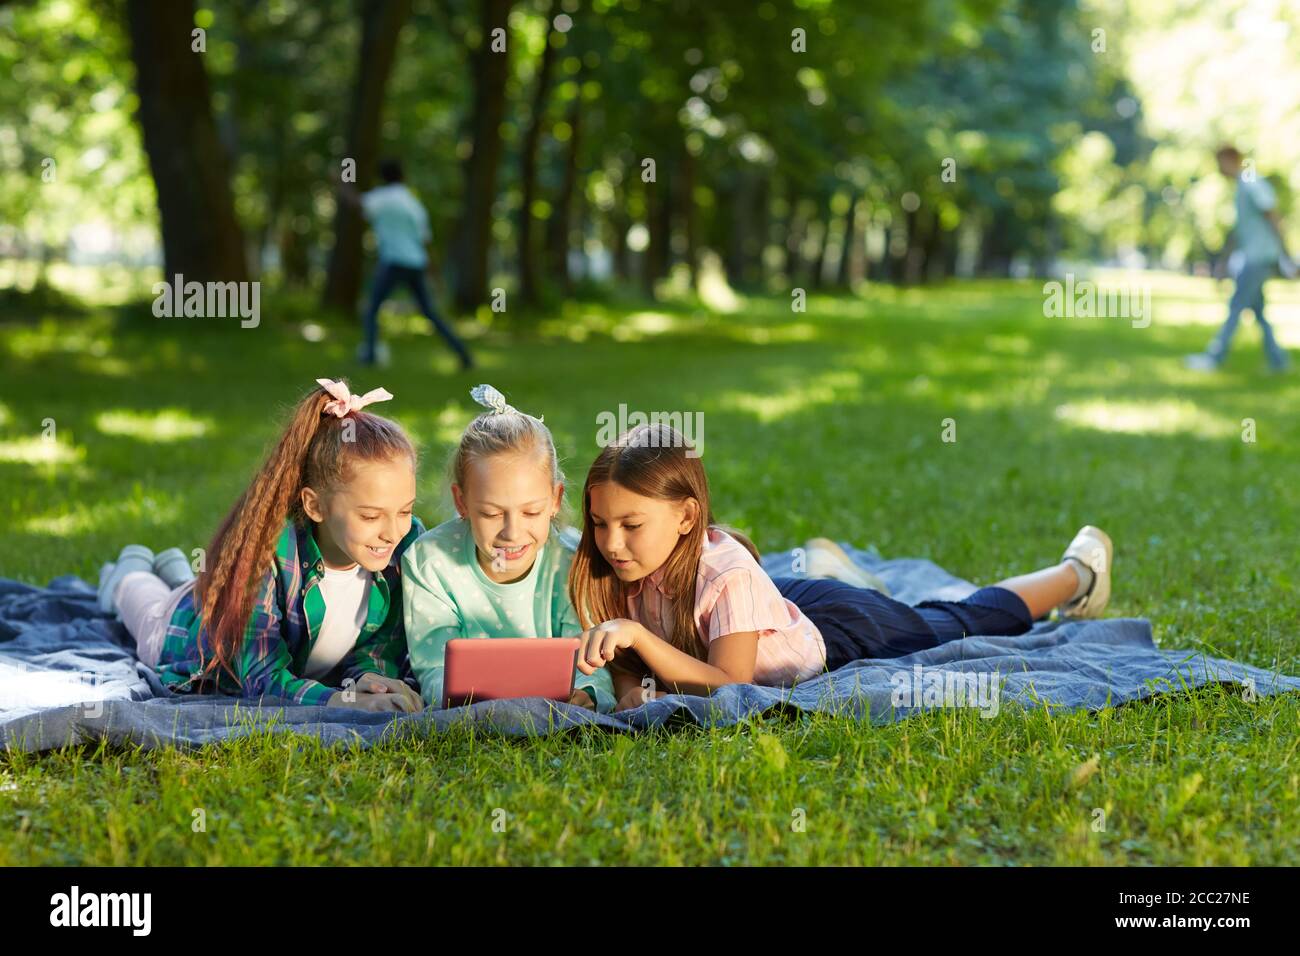 Ritratto a lunghezza intera di tre ragazze adolescenti che usano un tablet digitale mentre giacciono sull'erba verde in un parco all'aperto illuminato dalla luce del sole, spazio di copia Foto Stock